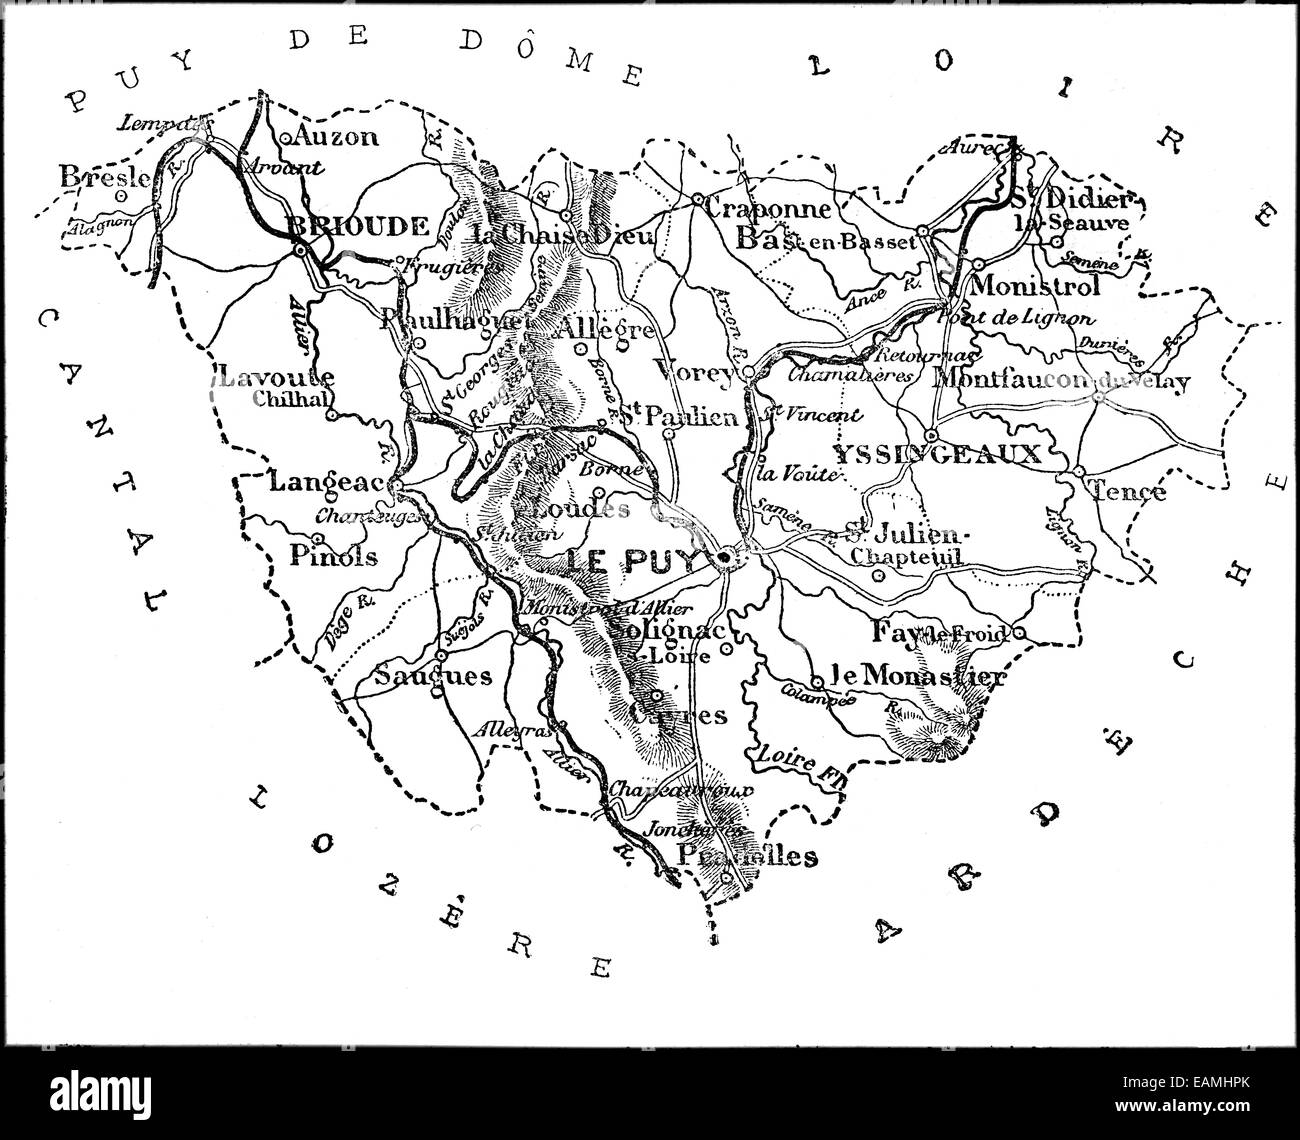 Mappa del dipartimento della Haute Loire, vintage illustrazioni incise. Journal des Voyages, viaggio ufficiale, (1879-80). Foto Stock